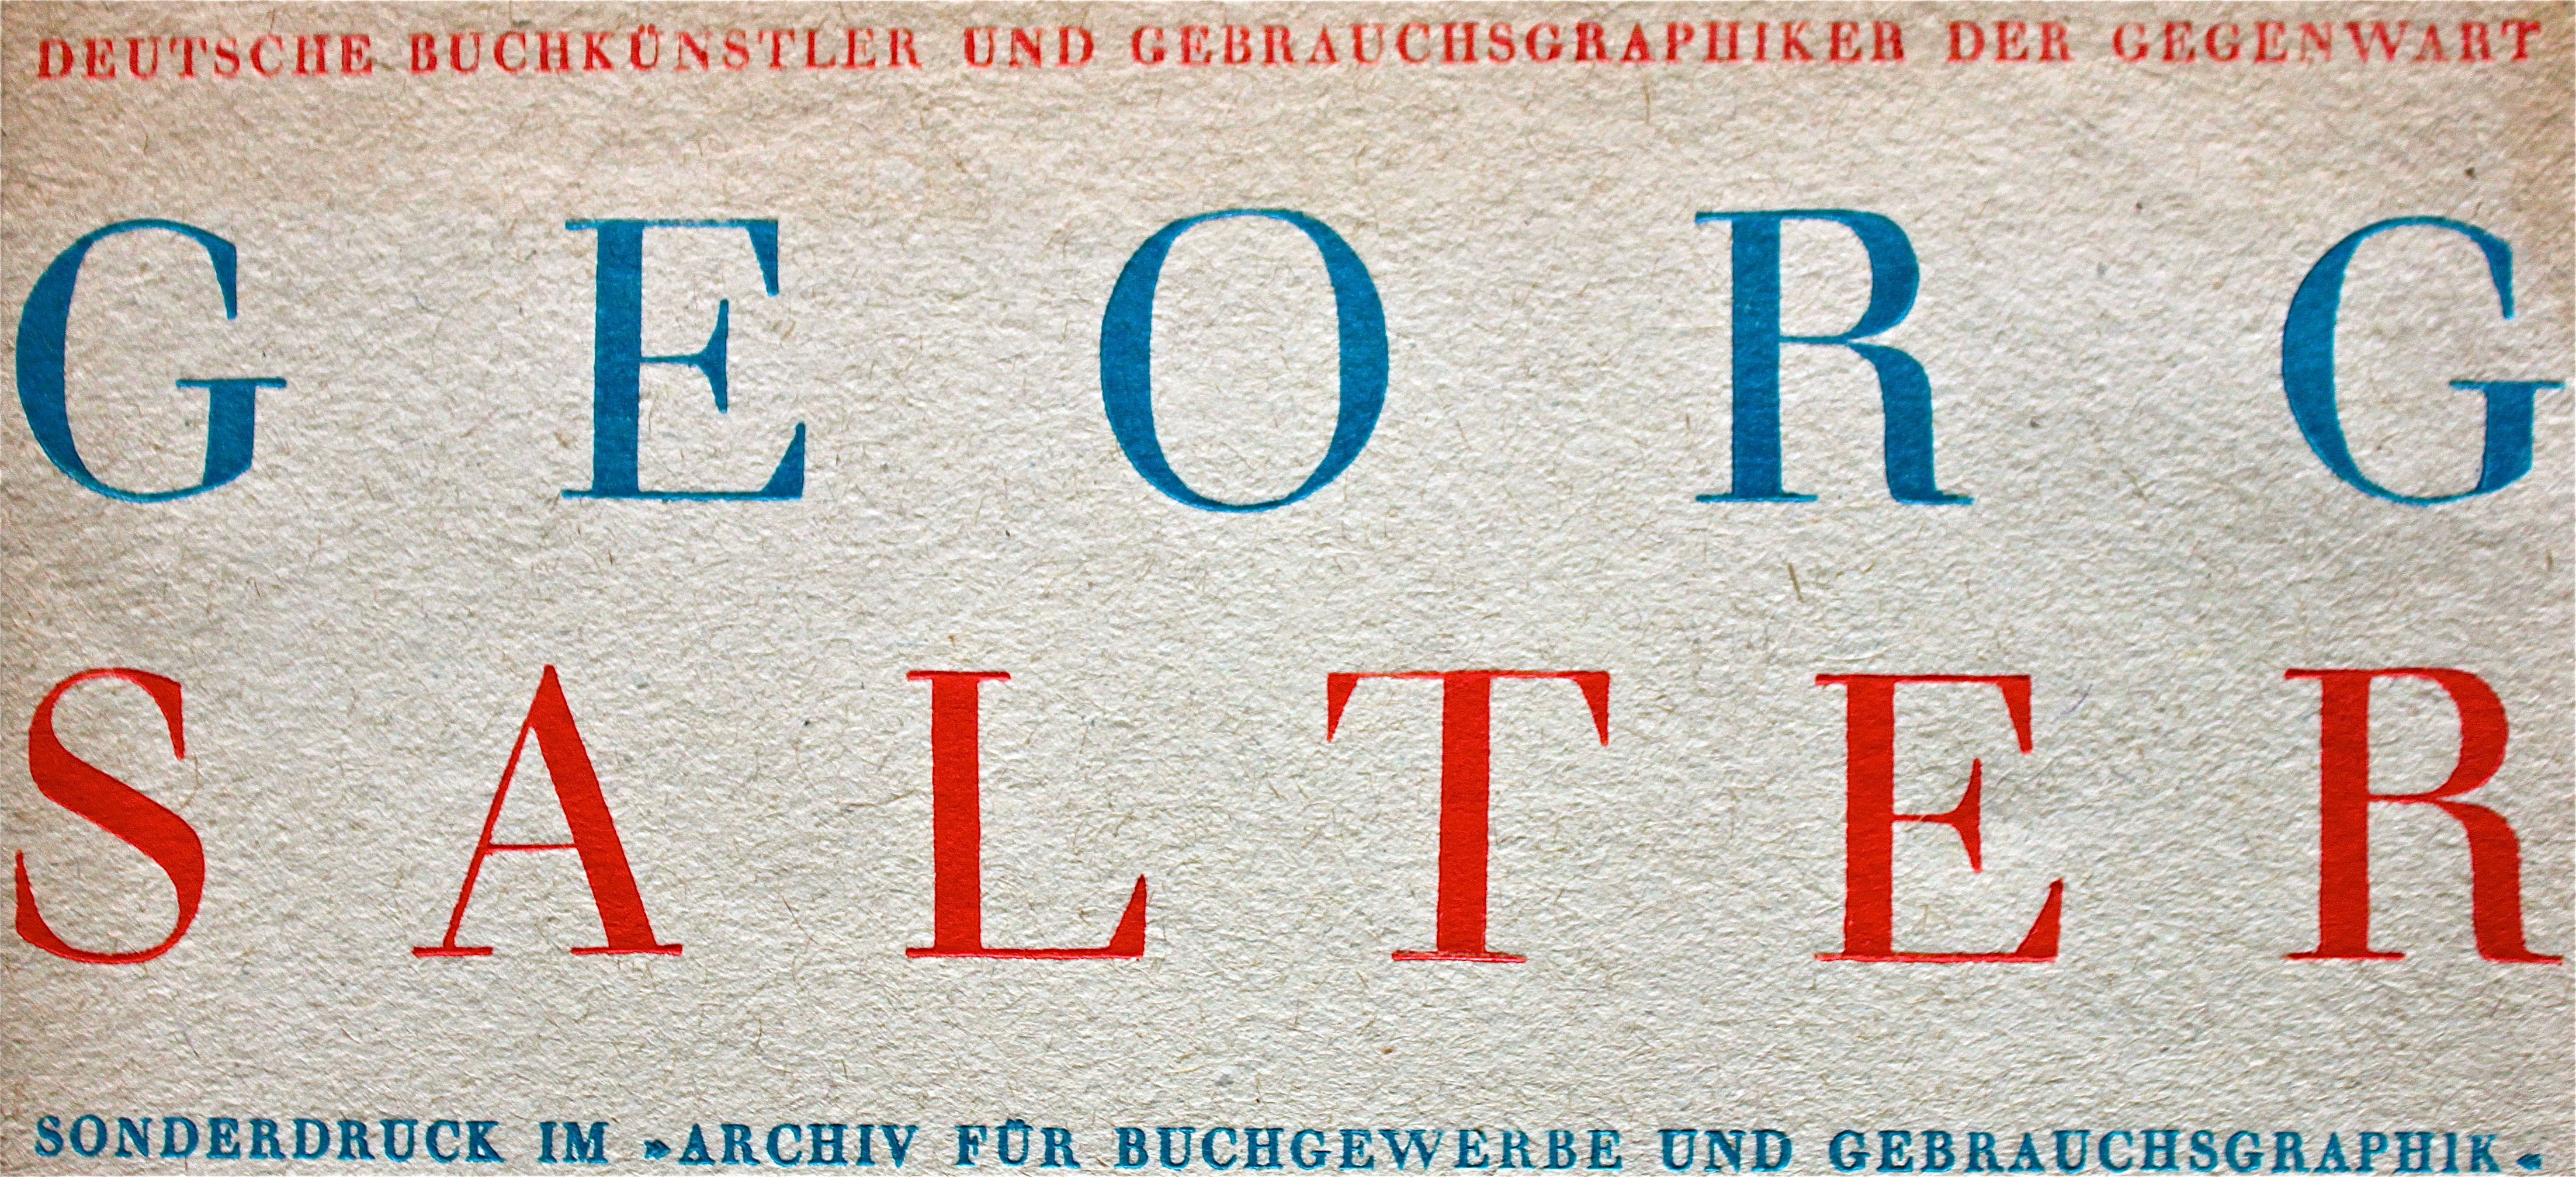 Eberhard Hölscher, Georg Salter, in: Archiv für Buchgewerbe und Gebrauchsgraphik 67, H.9 (1930),  36 S. (Deutsche Buchkünstler und Gebrauchsgraphiker der Gegenwart).